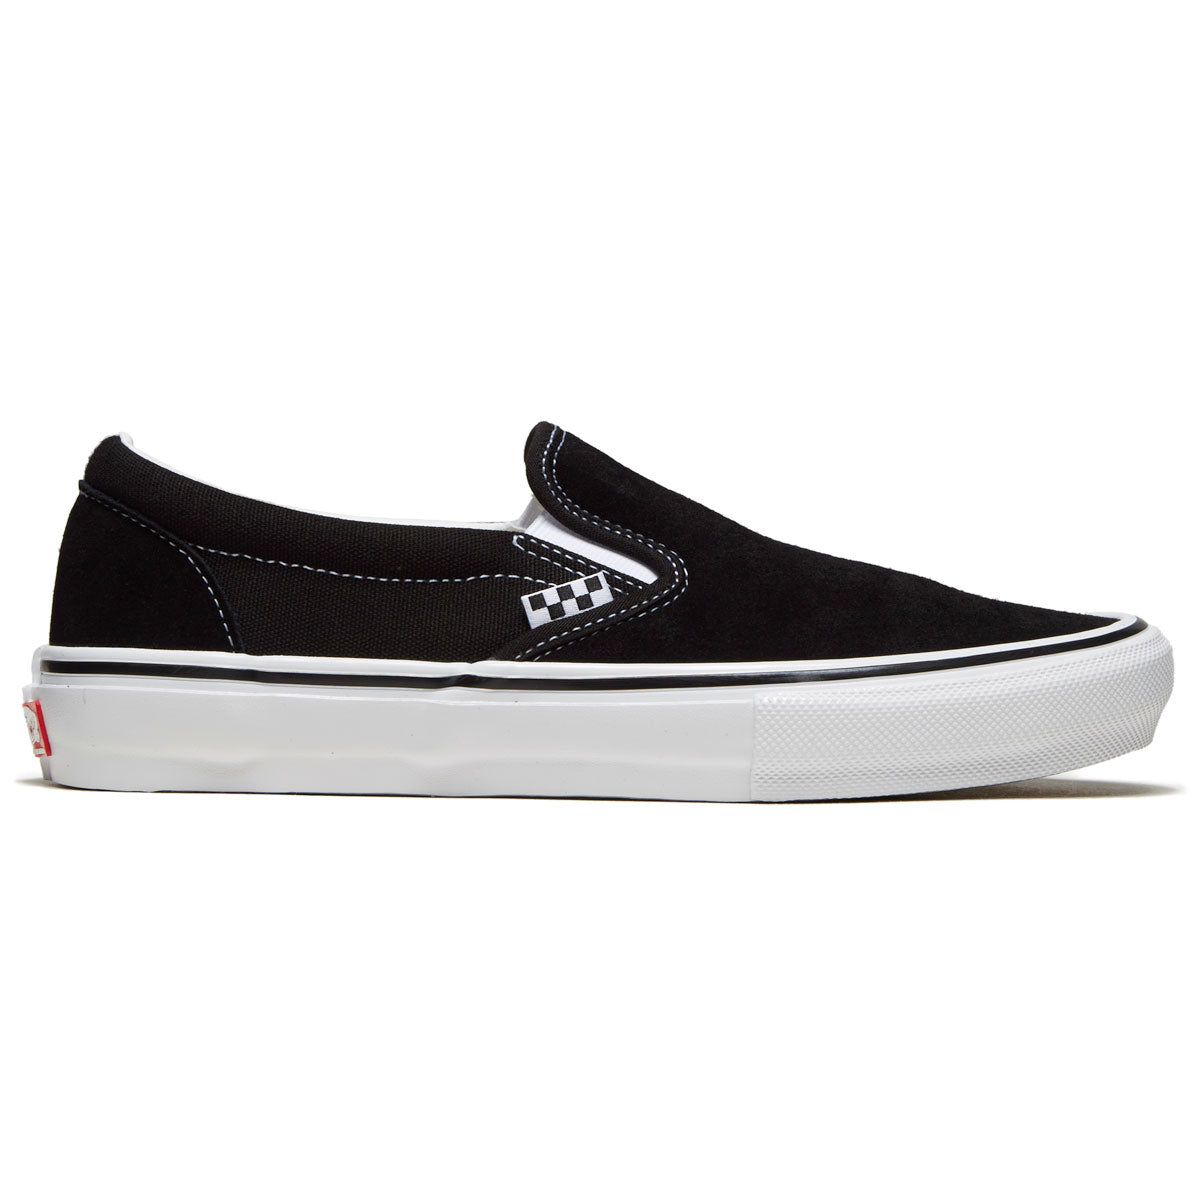 Vans Skate Slip-on Shoes - Black/White image 1